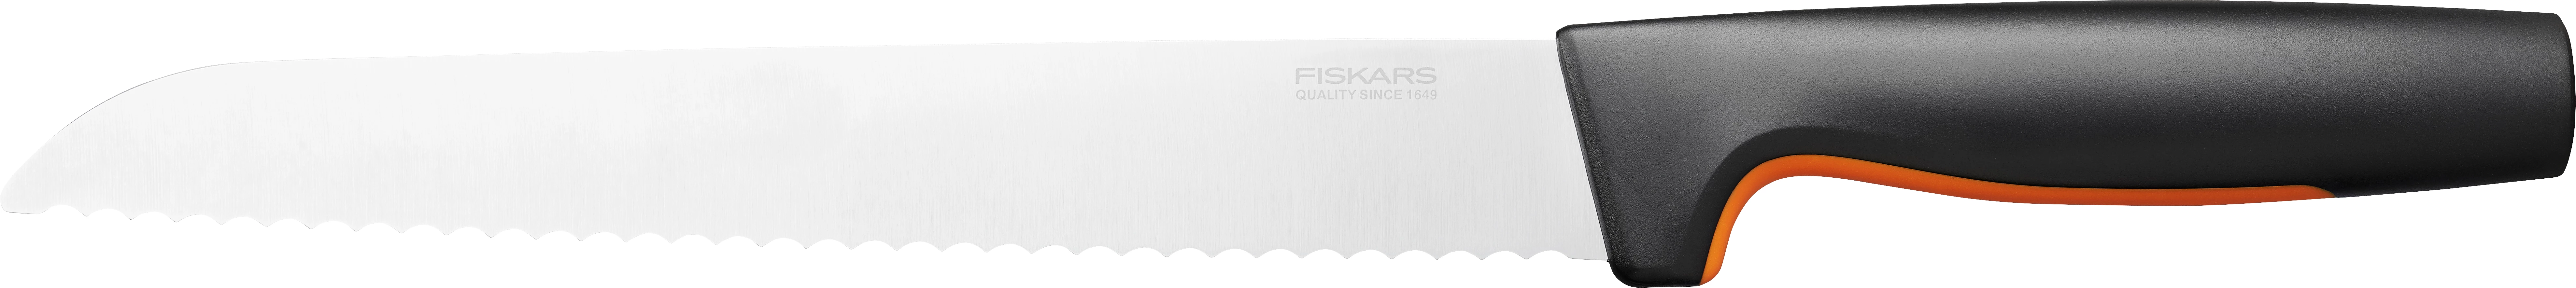 Fiskars brødkniv med plastgreb, skrå, 20 cm